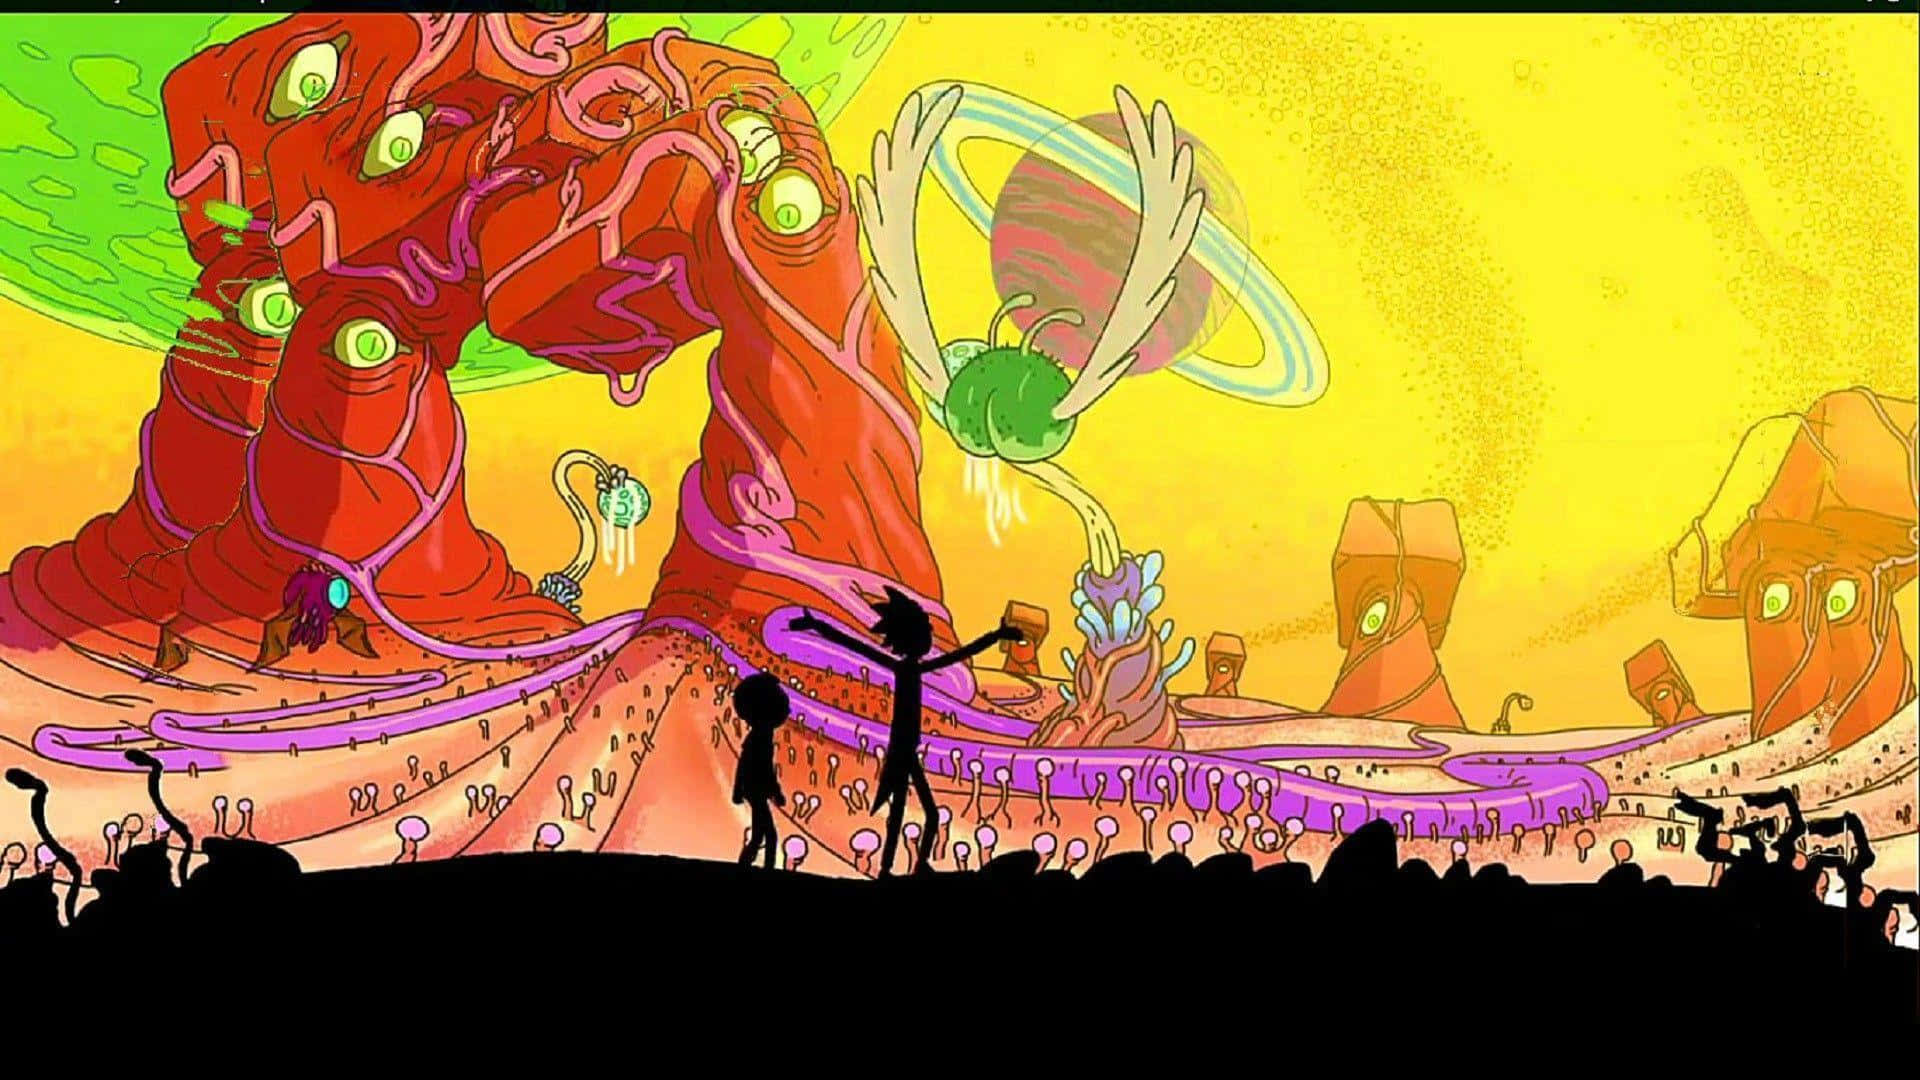 Ricke Morty Embarcam Em Uma Jornada Interdimensional De Exploração E Diversão Enquanto Papel De Parede Para Computador Ou Celular. Papel de Parede